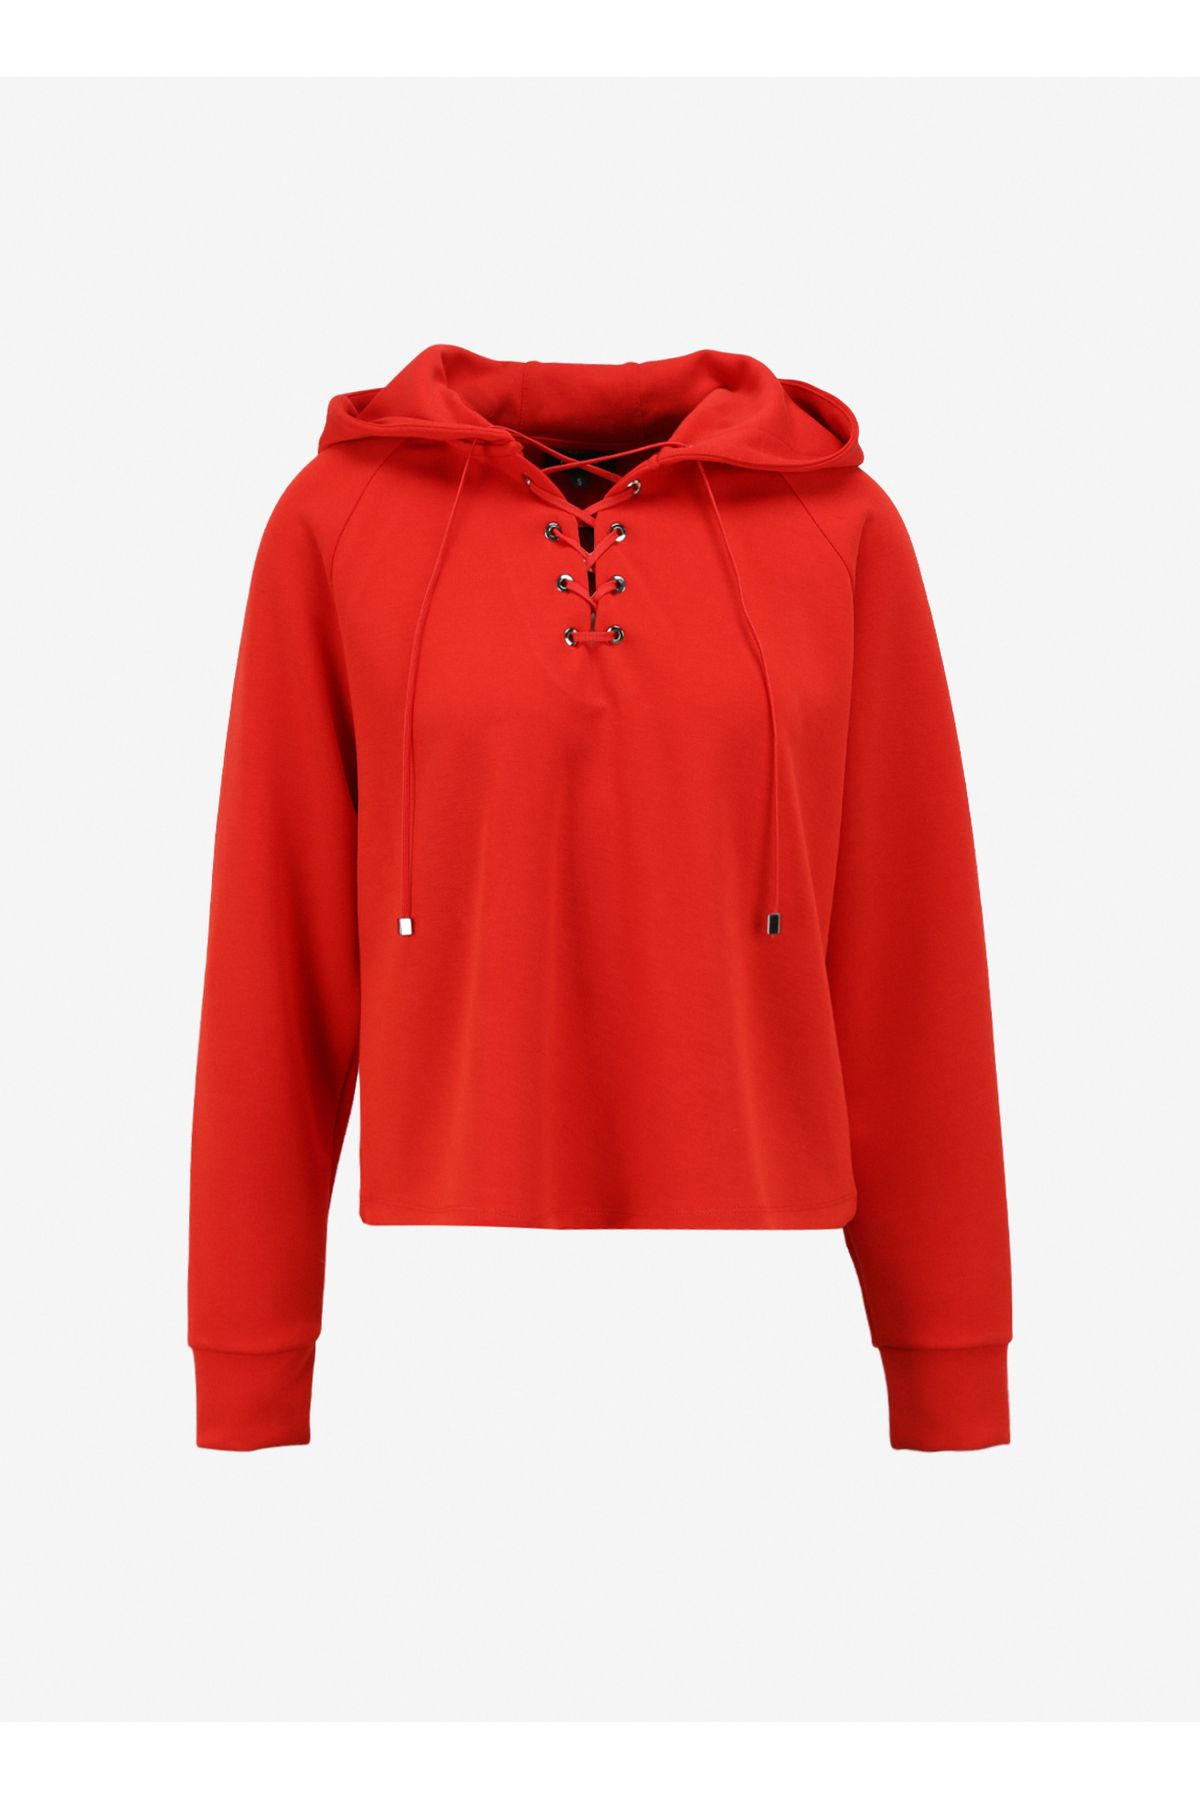 Fabrika Kırmızı Kadın Kapüşonlu Sweatshirt F4sl-swt0192